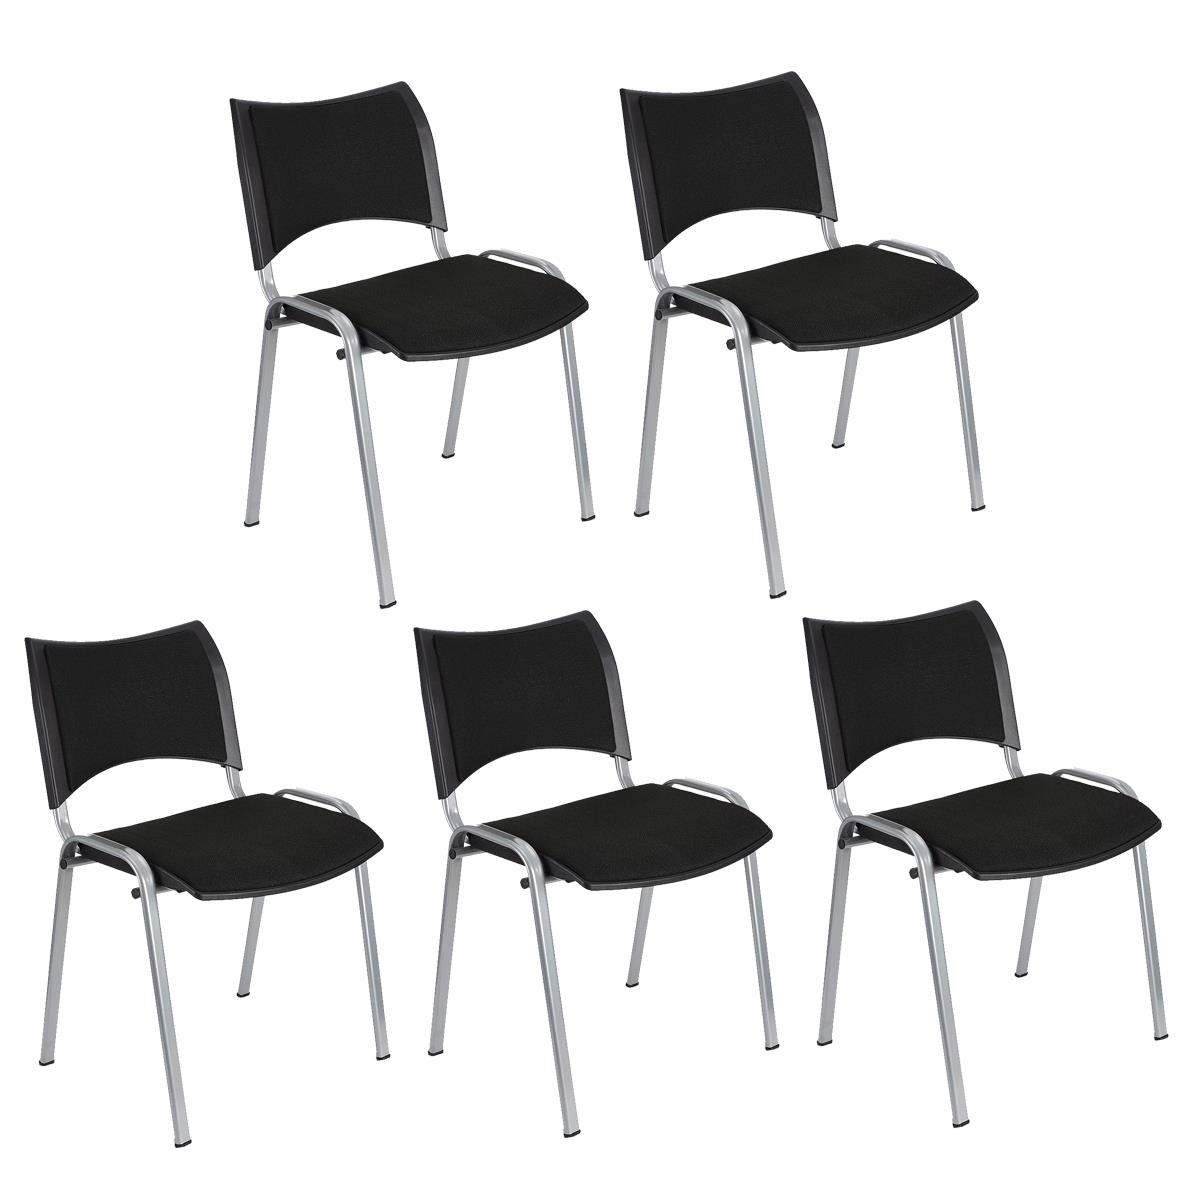 Lote 5 Cadeiras de Visita ROMEL, Prática e Empilhável, Pernas Cinza, Em Pano, Preto